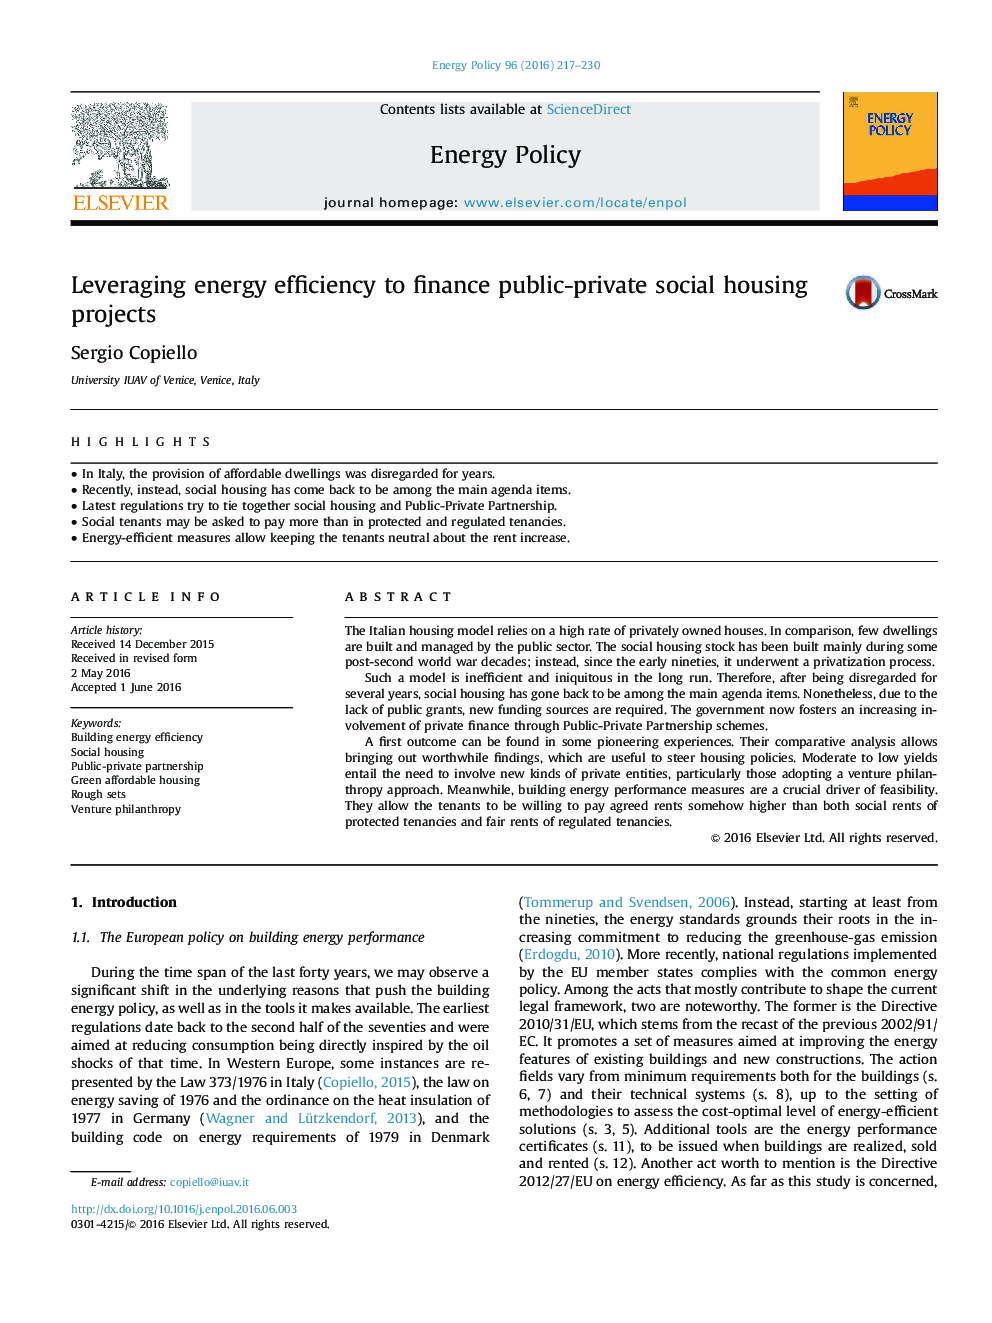 افزایش بهره وری انرژی برای سرمایه گذاری پروژه های مسکن اجتماعی عمومی و خصوصی 